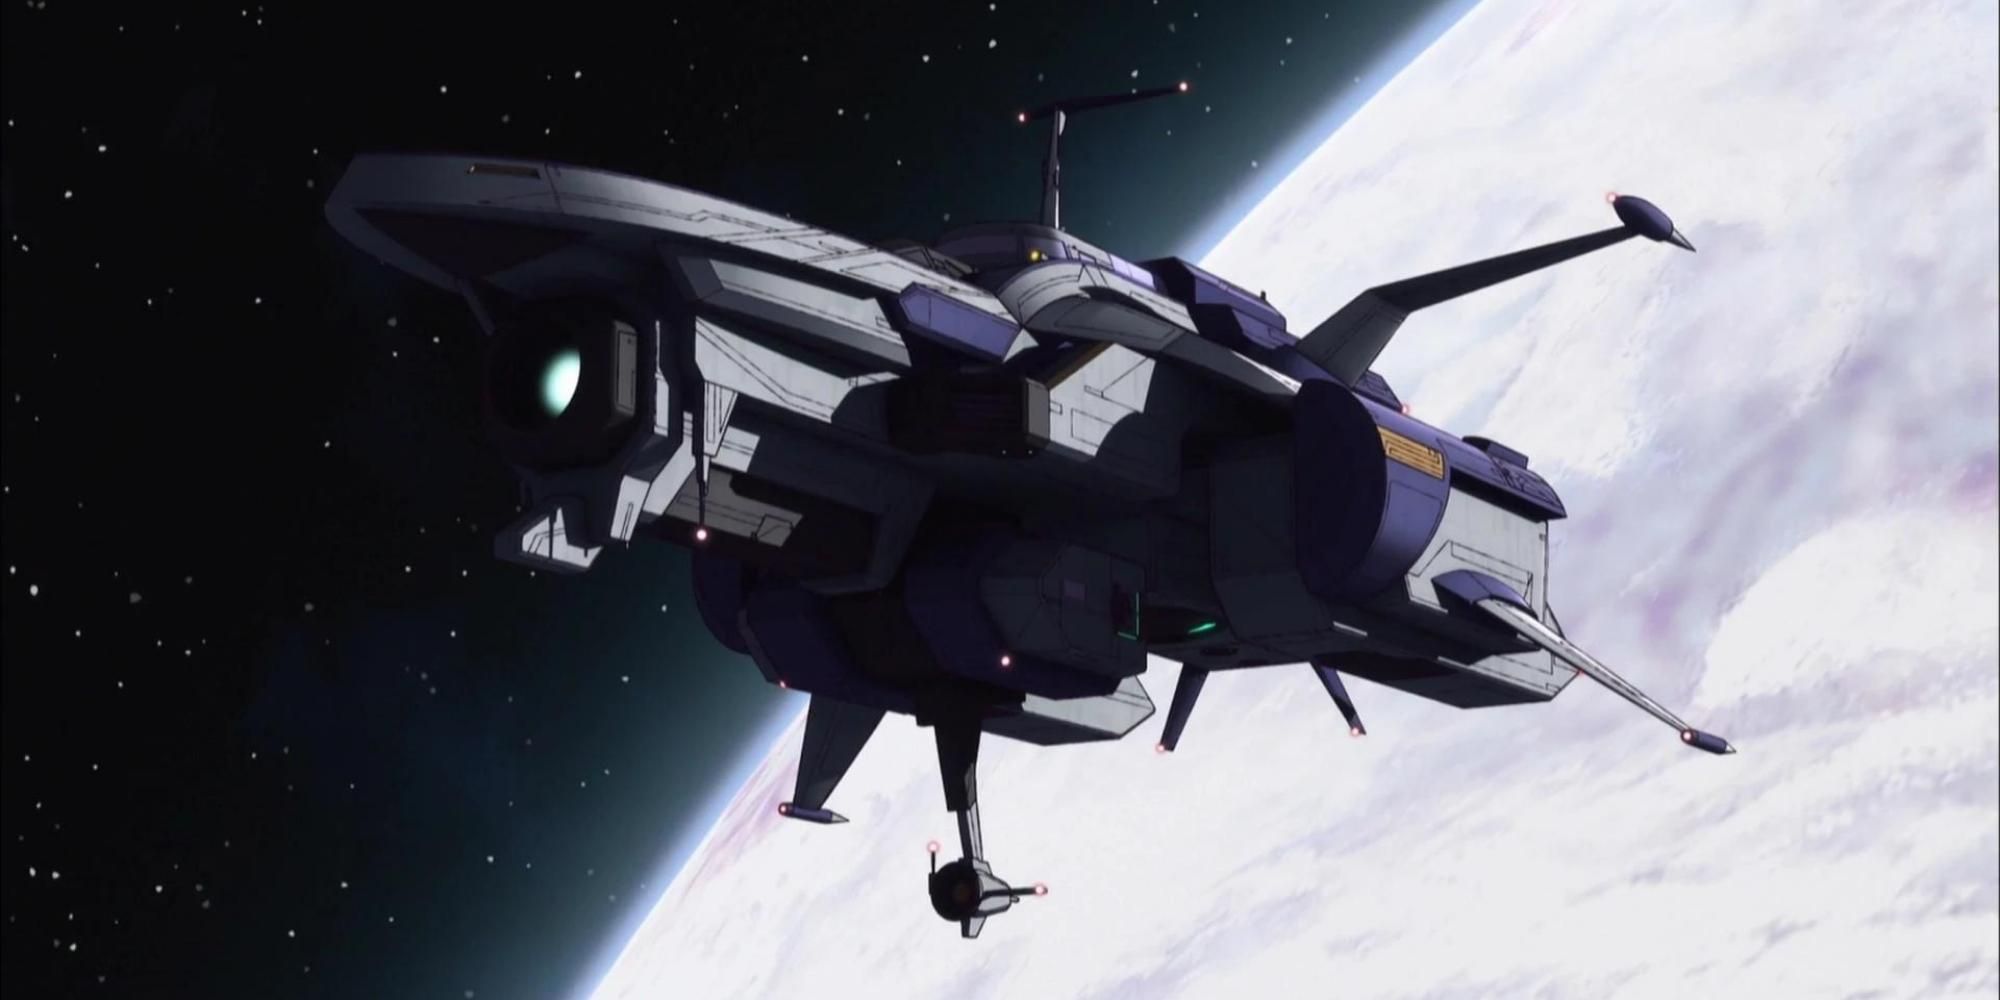 Anime Original Aeronave Ficção Científica Gato Garota Bicicleta Spaceship  Papel de Parede | Concept ships, Battleship, Spaceship art